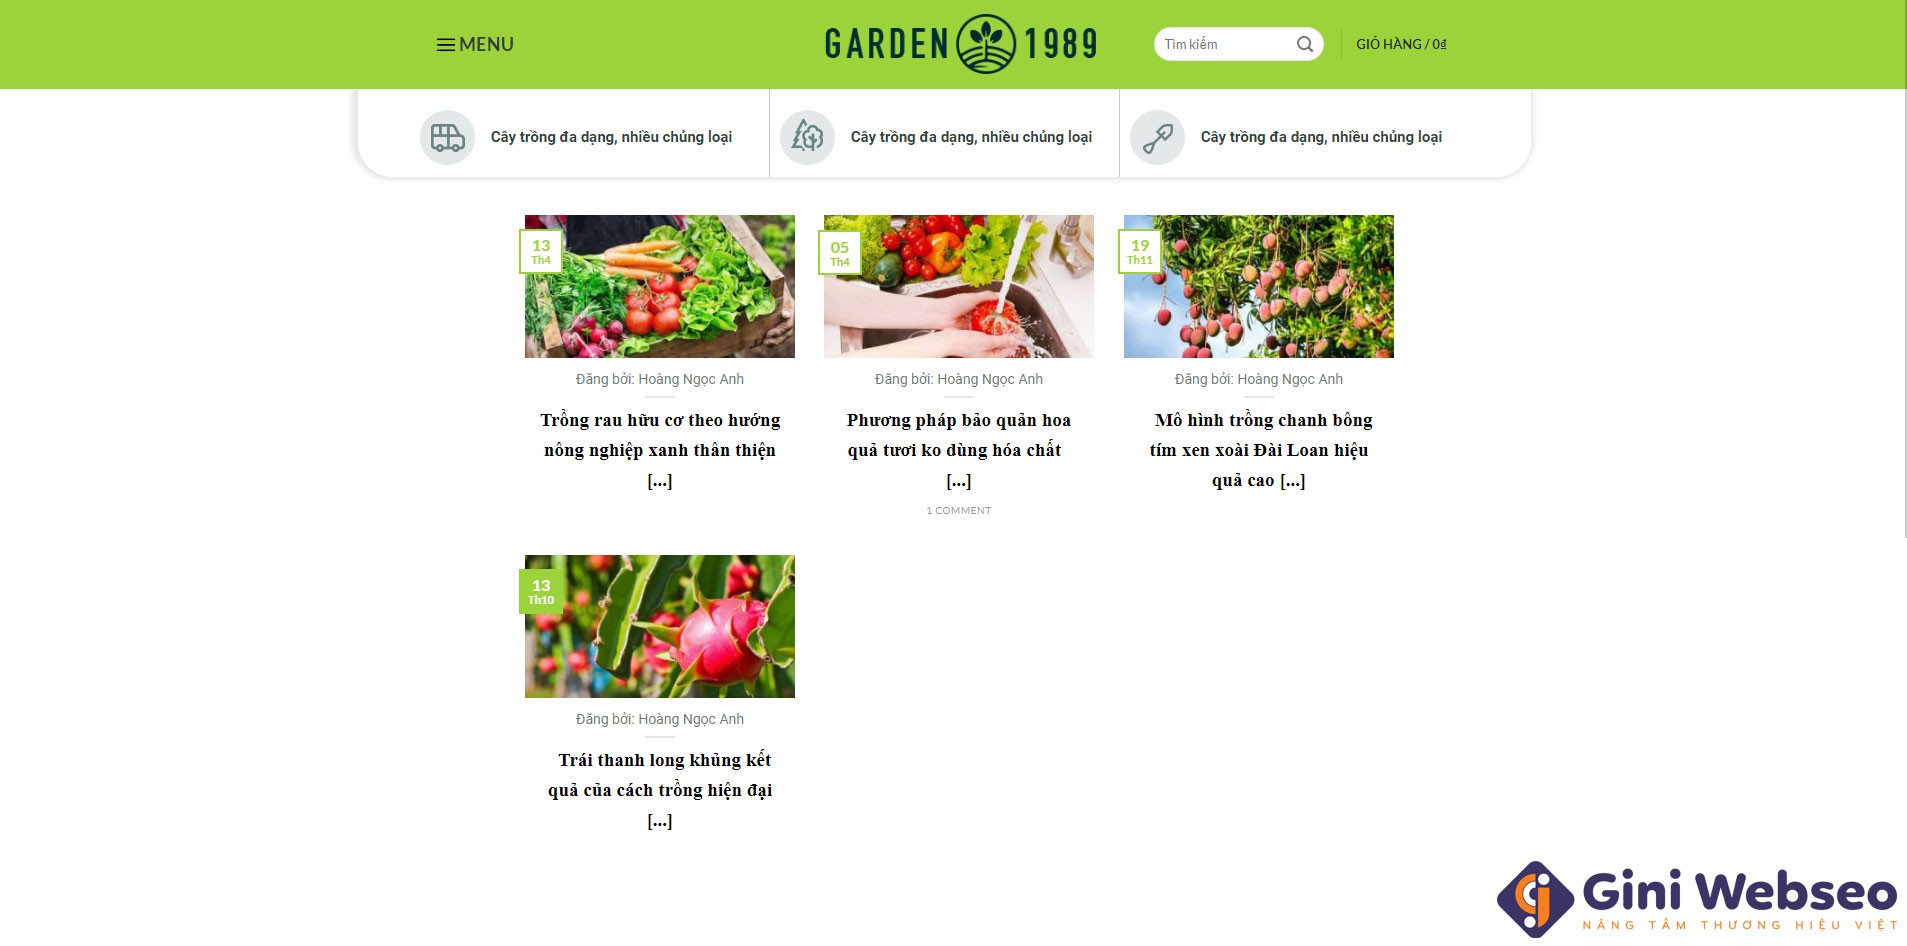 Thiết kế website cây giống Garden 1989